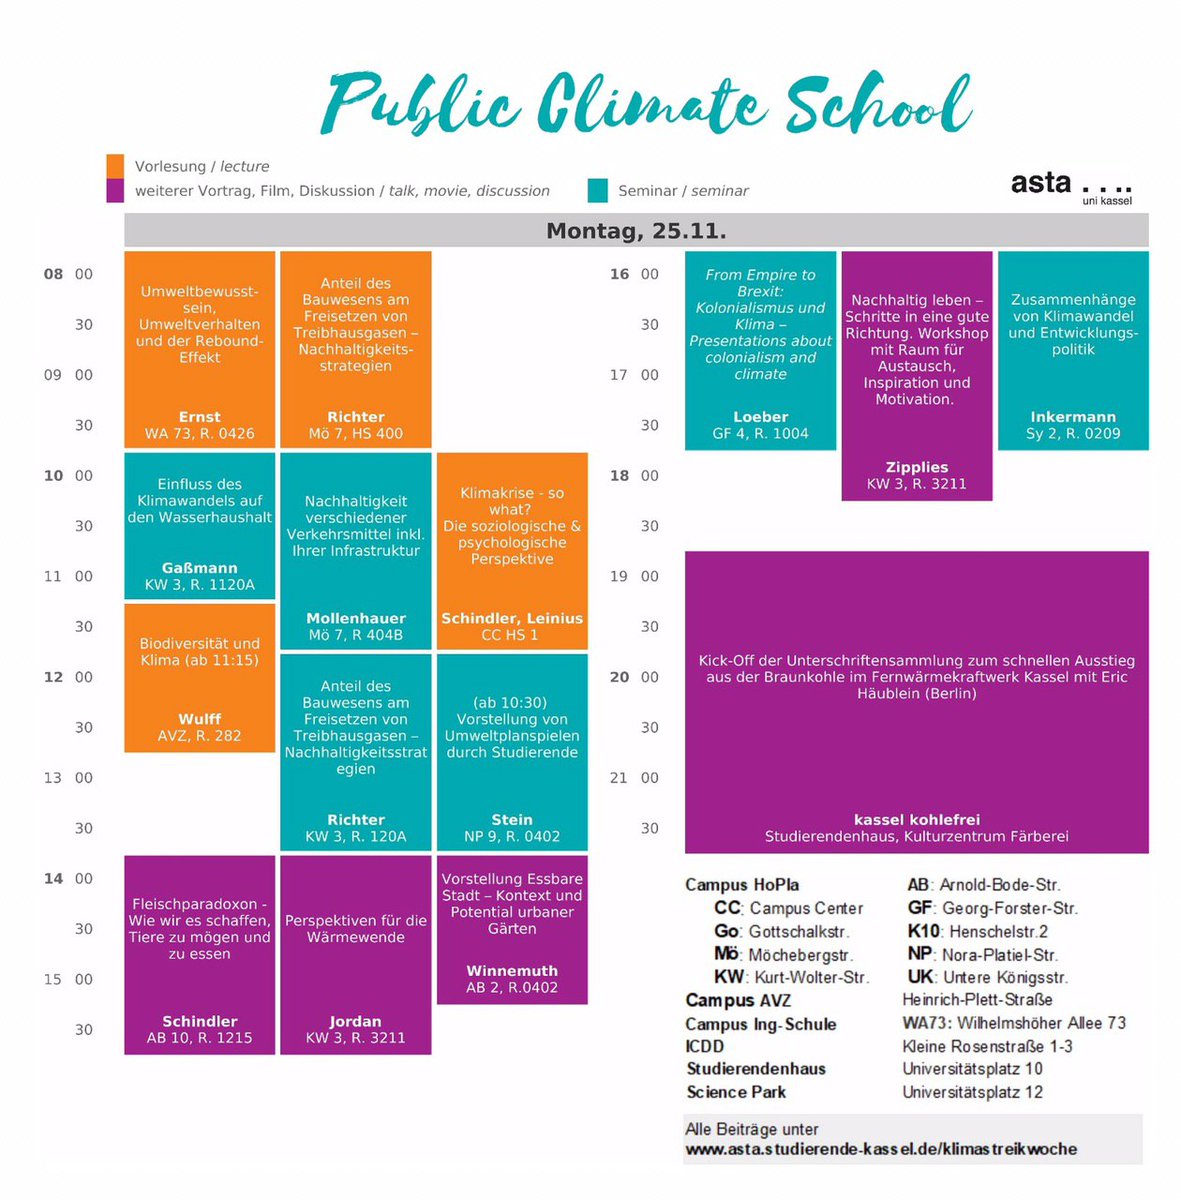 Die Public Climate School in #Kassel geht los.
Wir haben alle Dozierenden aufgefordert, in dieser Woche ihre Veranstaltungen in klimarelevante Themen umzuwidmen.
#Klimastreik #Wochenstart #Klimawoche #PublicClimateSchool

Das Tagesprogramm an der #UniKassel für heute: